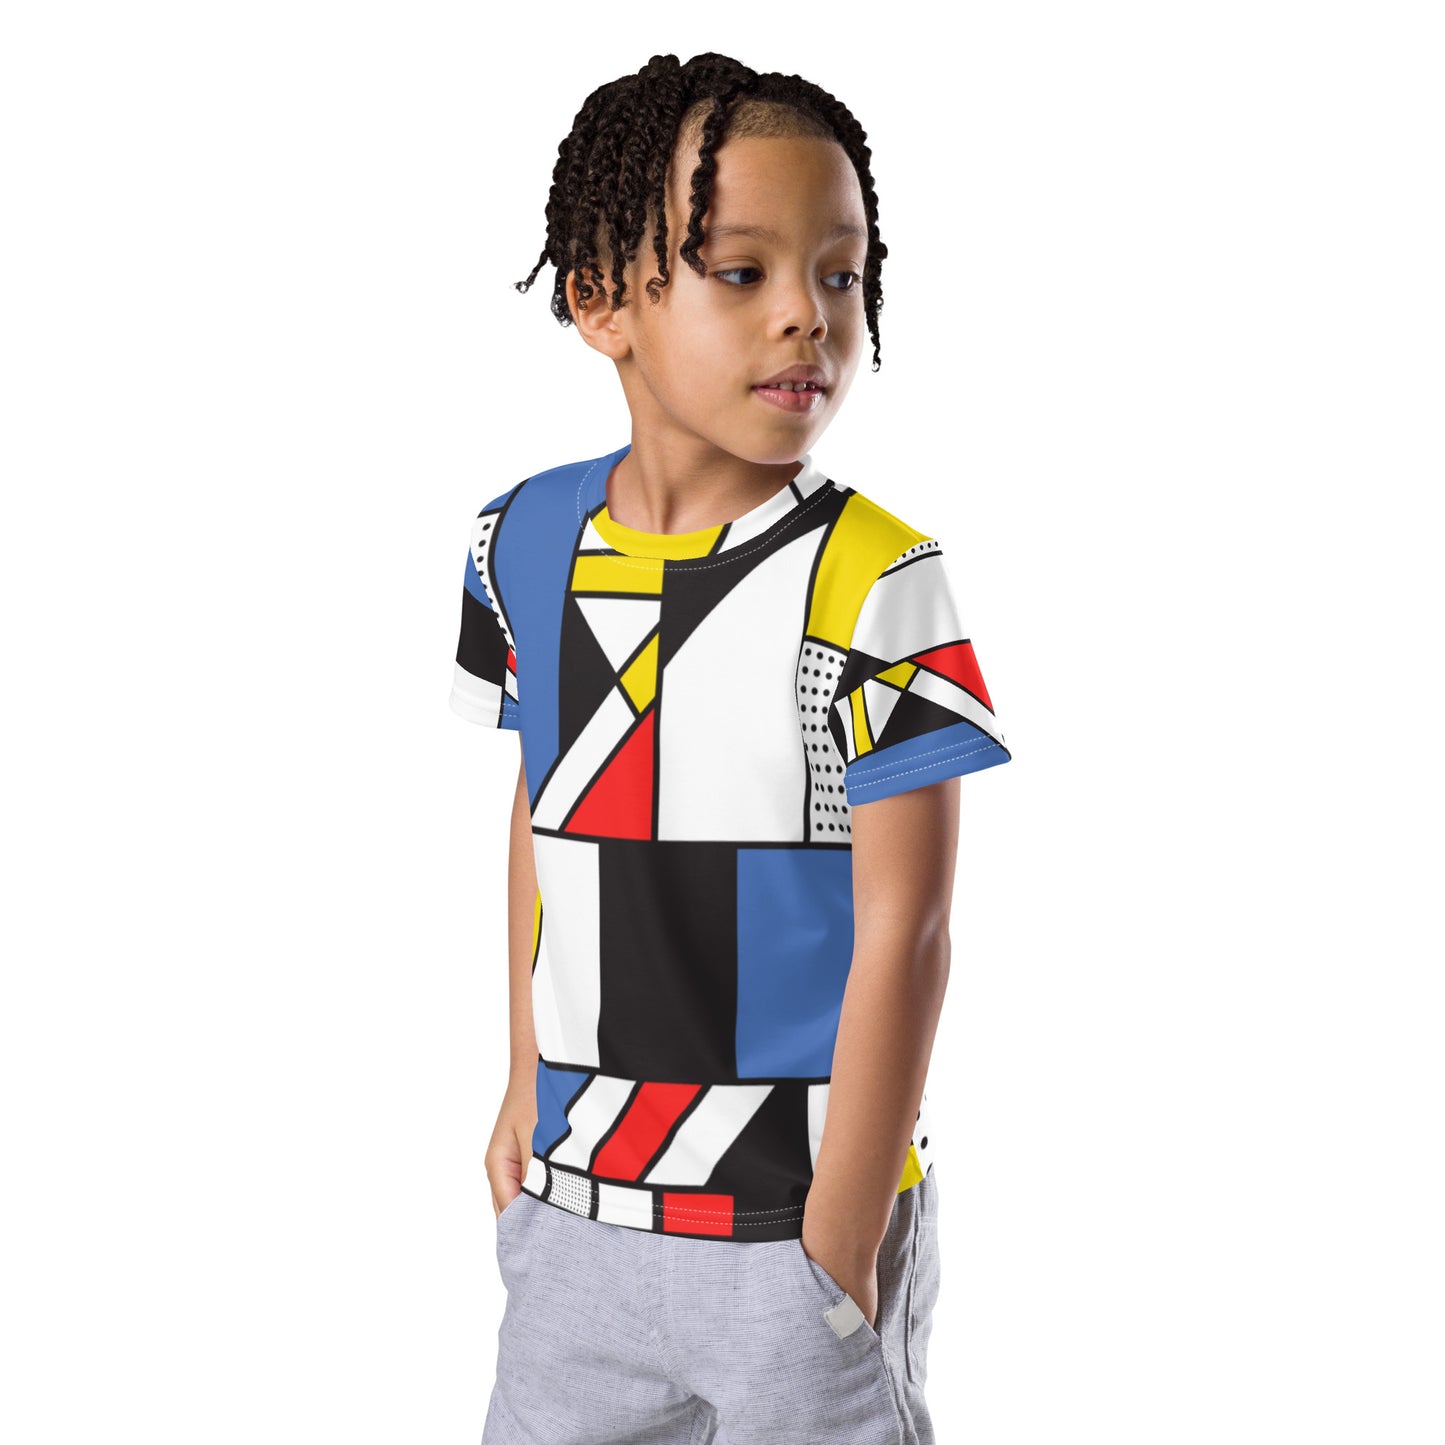 Kids crew neck t-shirt with Piet Mondrian design sourced Vecteezy.com